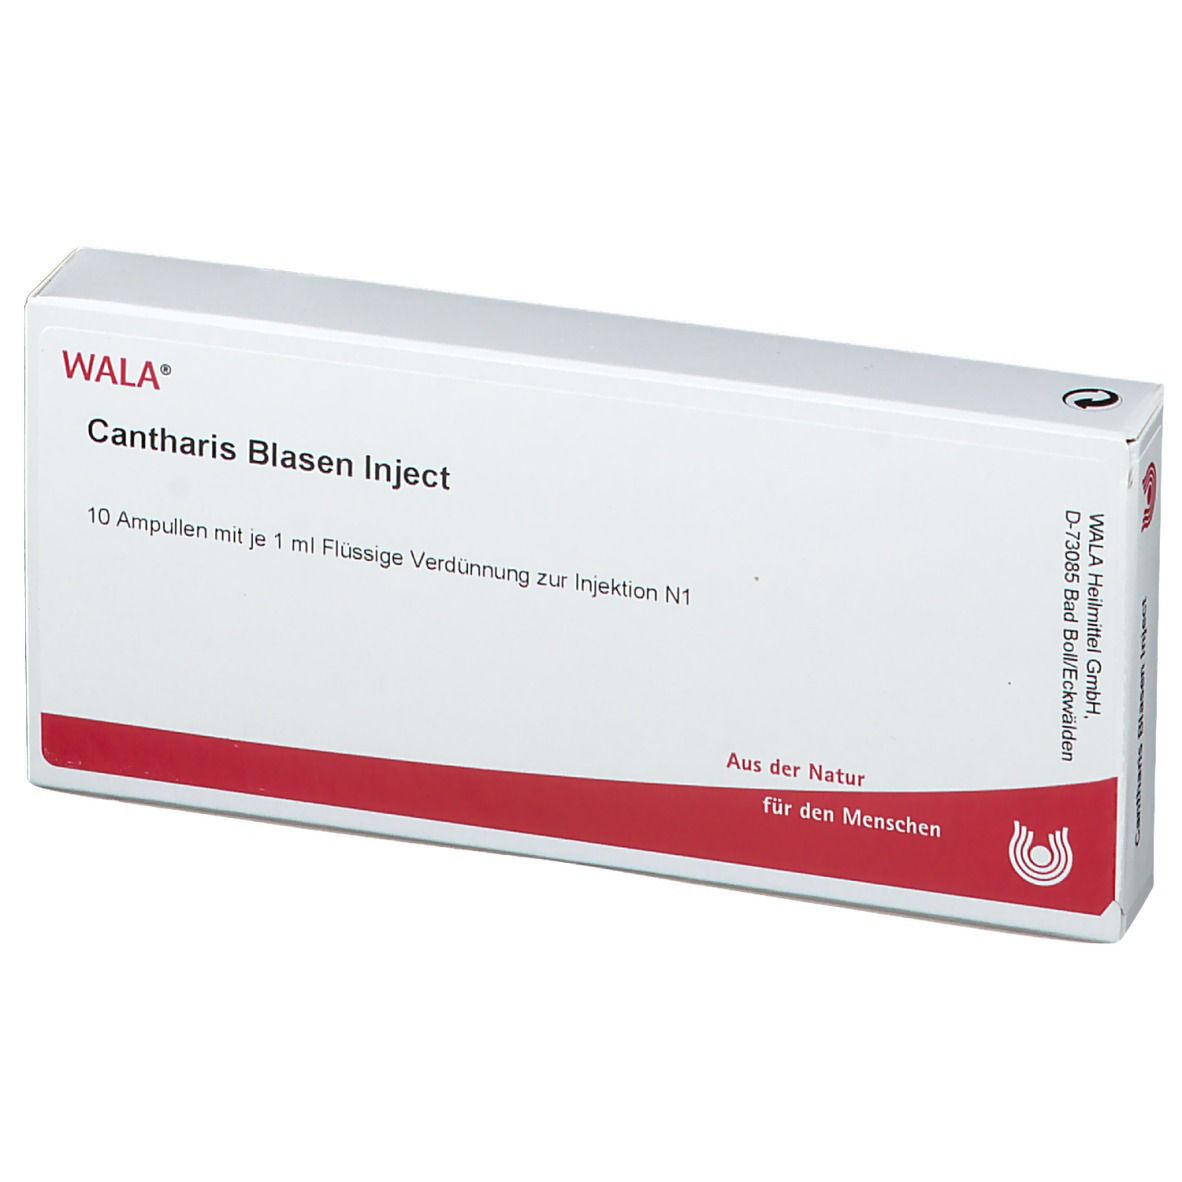 WALA® Cantharis Blasen Inject Amp.